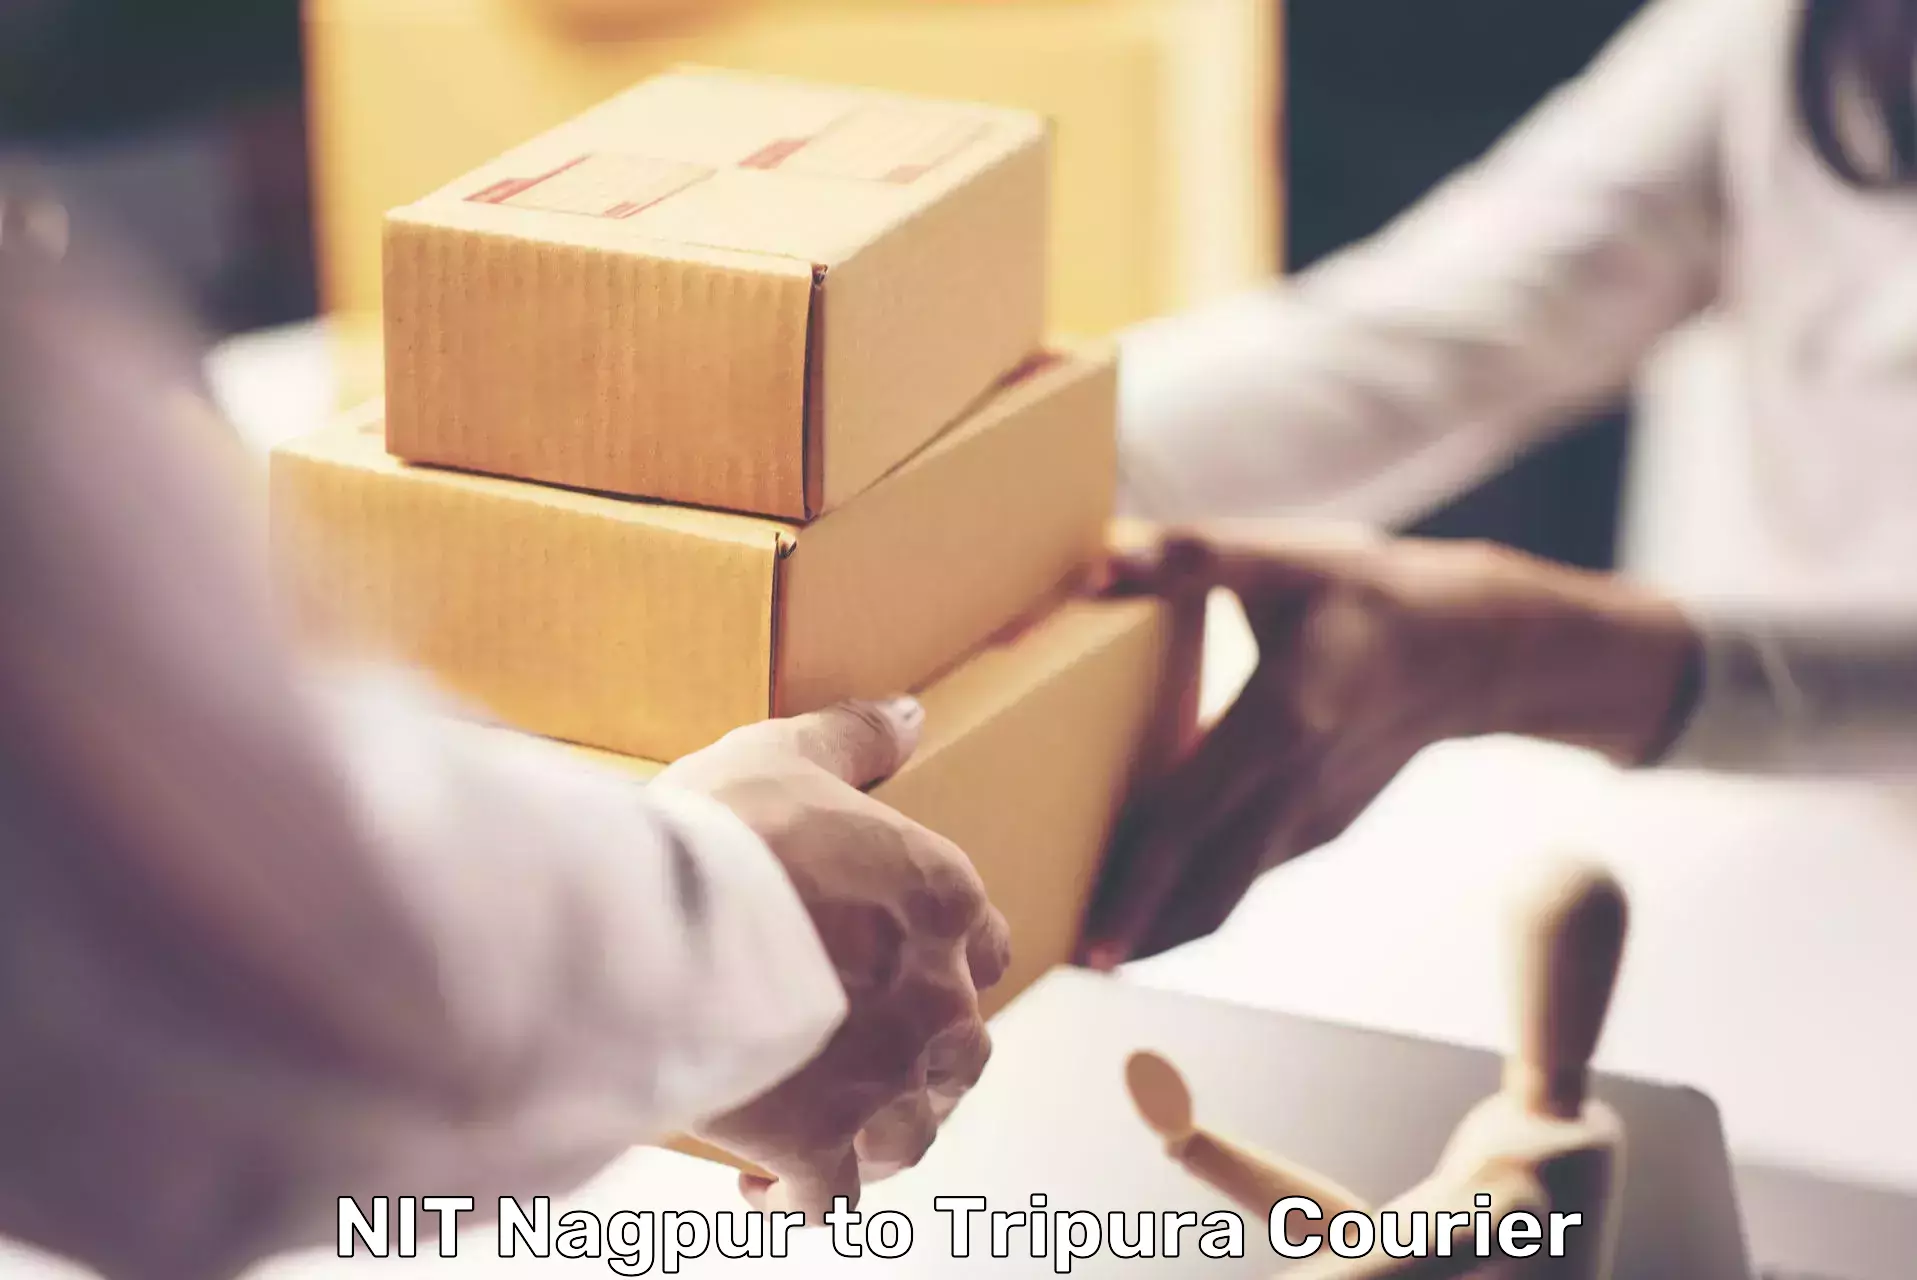 Premium courier services NIT Nagpur to West Tripura